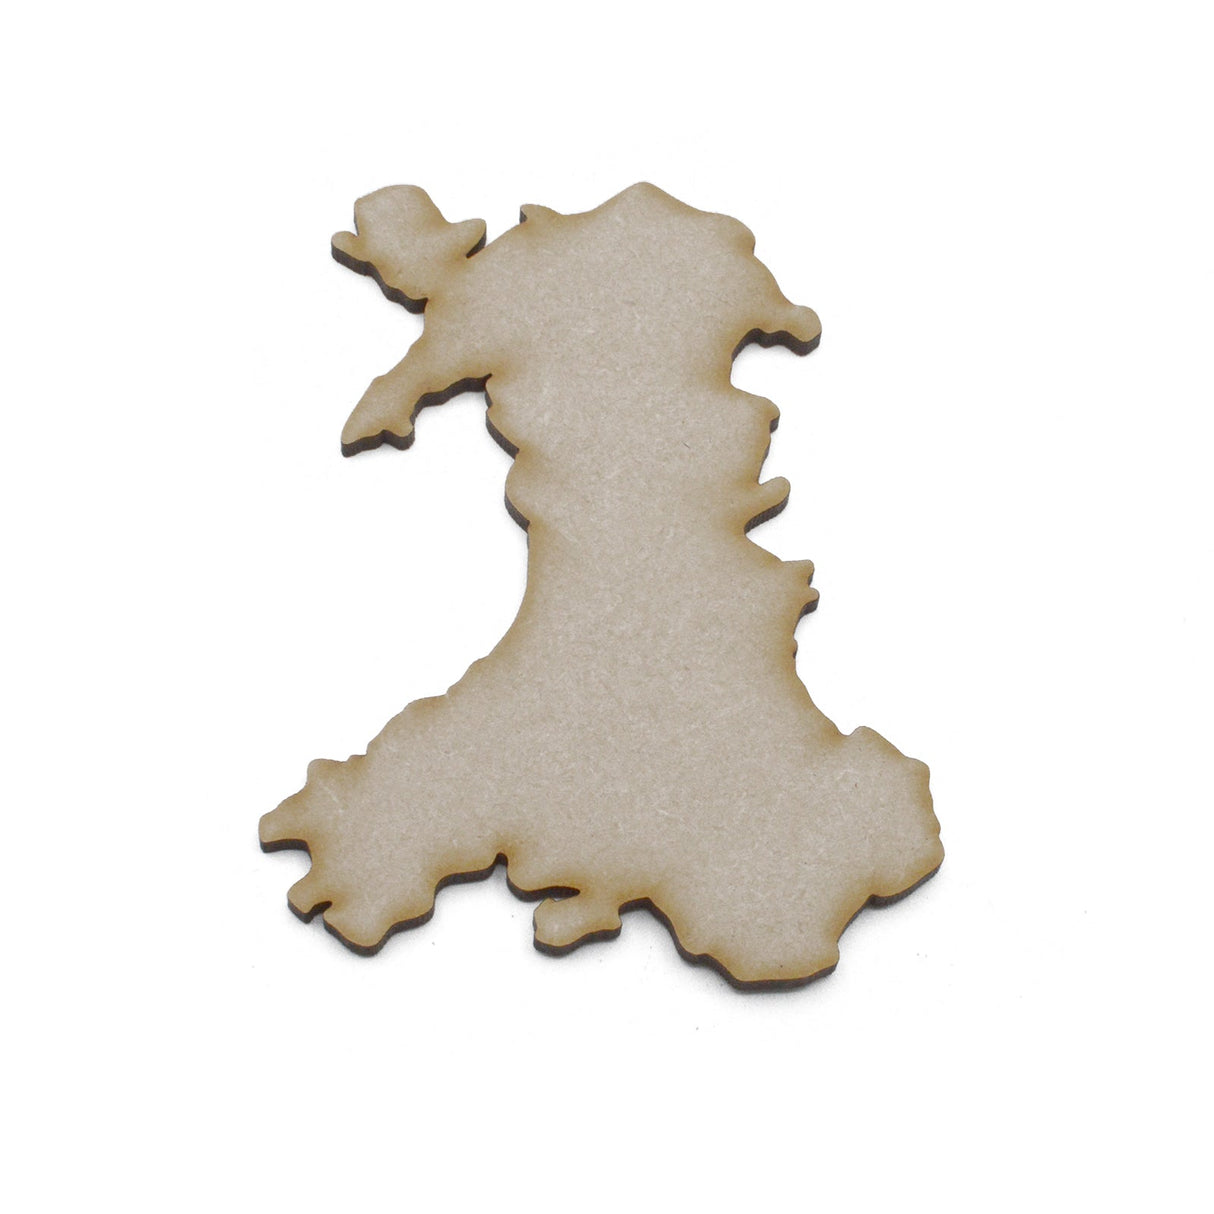 Wooden Welsh Maps - Wales Map Outline Shapes - Laserworksuk